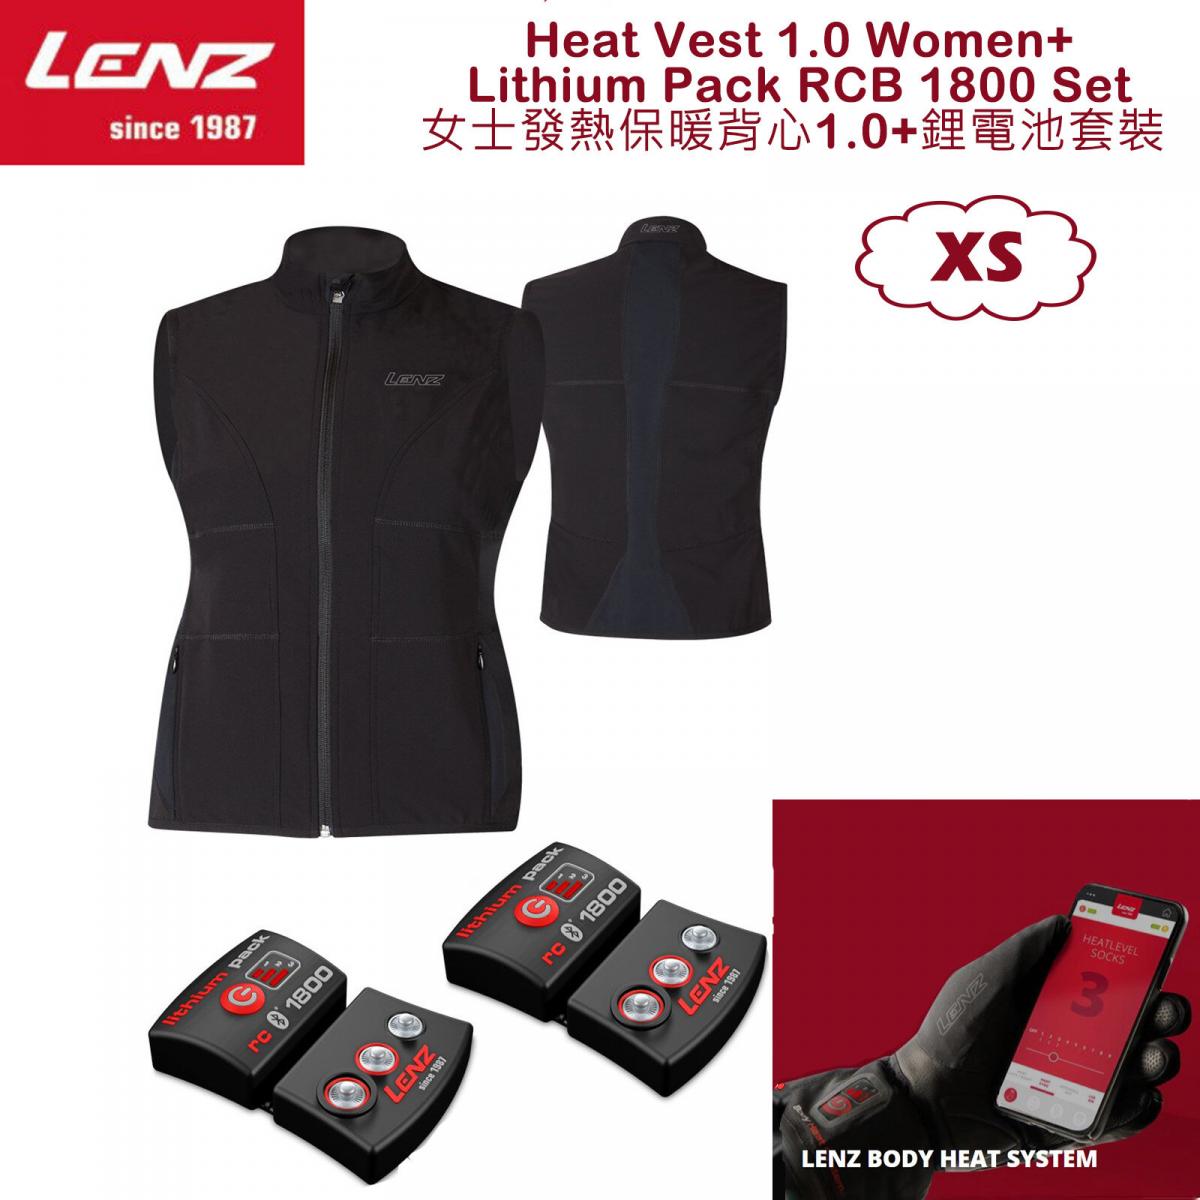 女士發熱保暖背心1.0 和 RCB 1800鋰電池套裝 尺碼 XS